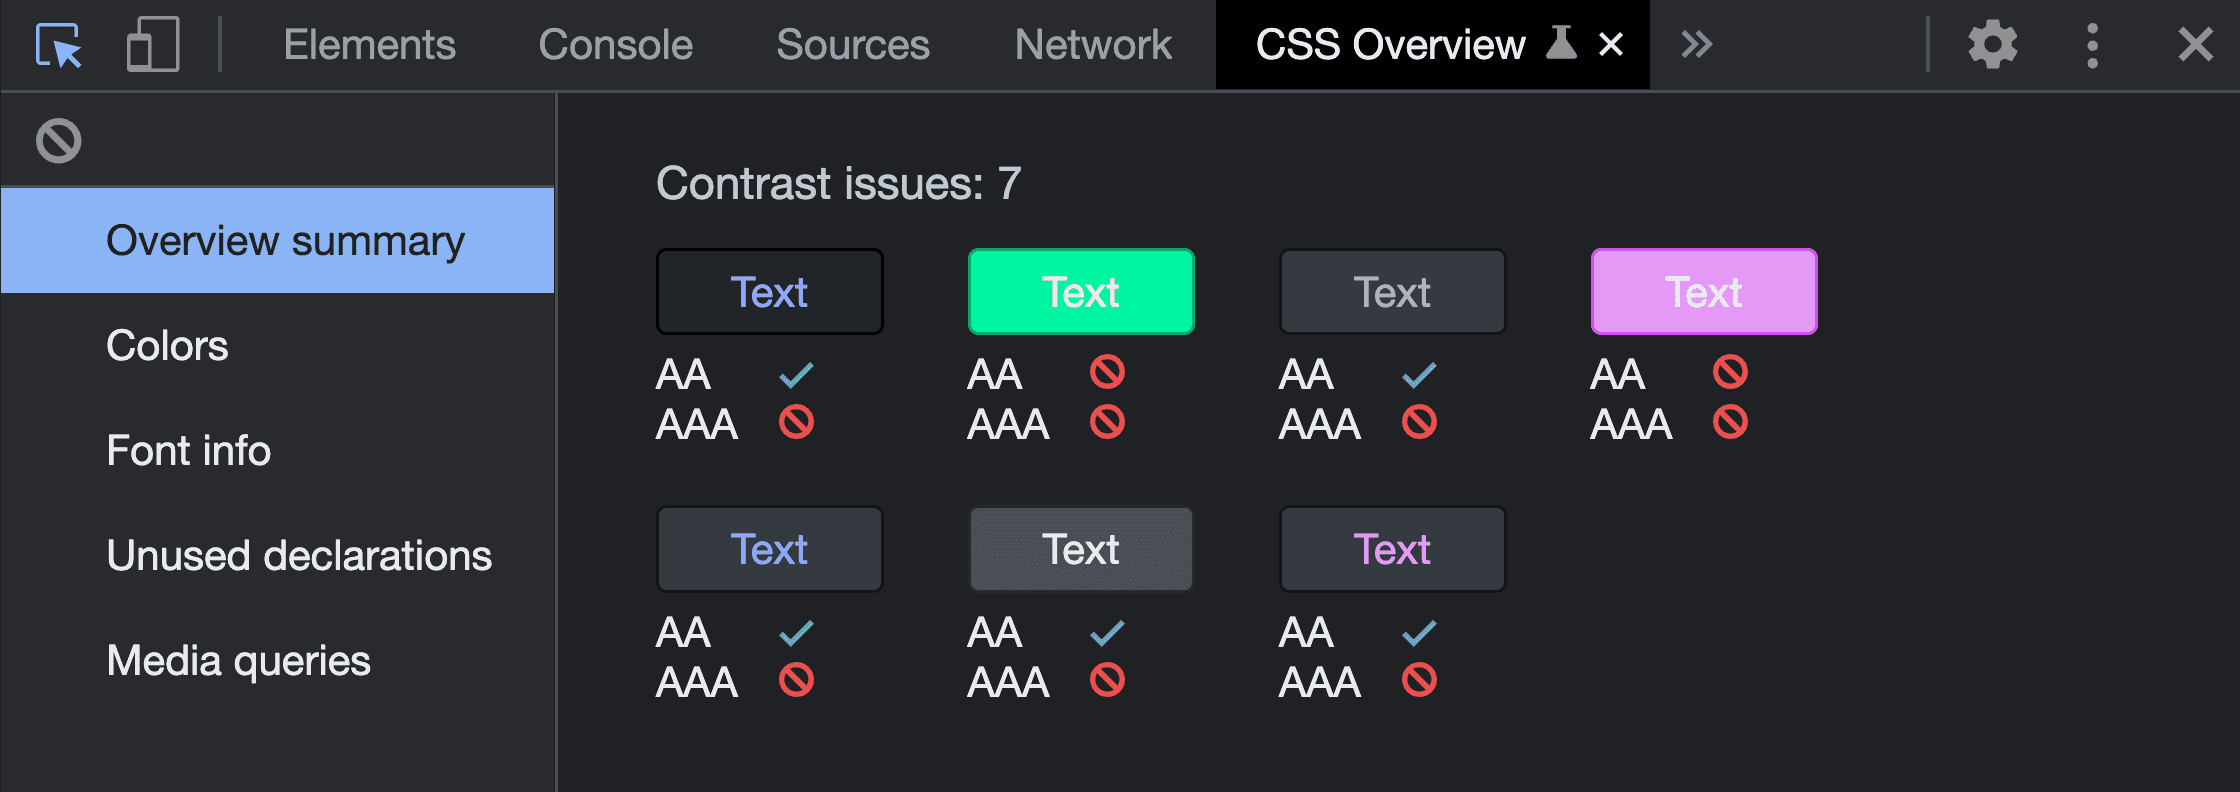 צילום מסך של סיכום הסקירה הכללית מהפעלת כלי הלכידה של סקירה כללית של CSS. מוצגות 7 בעיות ניגודיות, עם התאמות הצבעים שהתגלו והתוצאות שנכשלו.